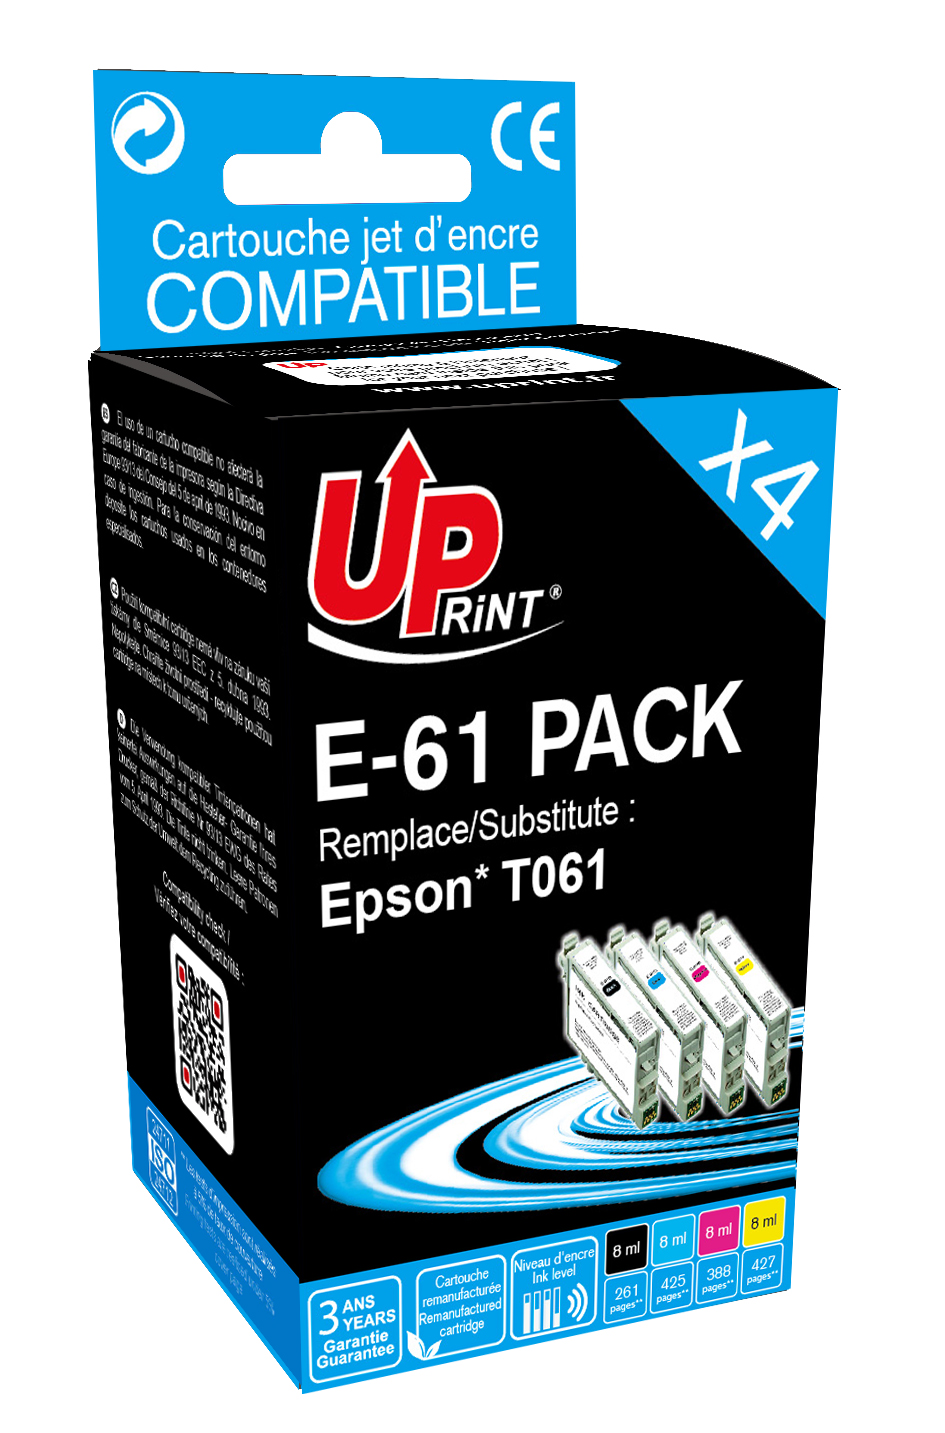 Promo Epson pack de 4 cartouches d'encre etoile de mer 603 chez